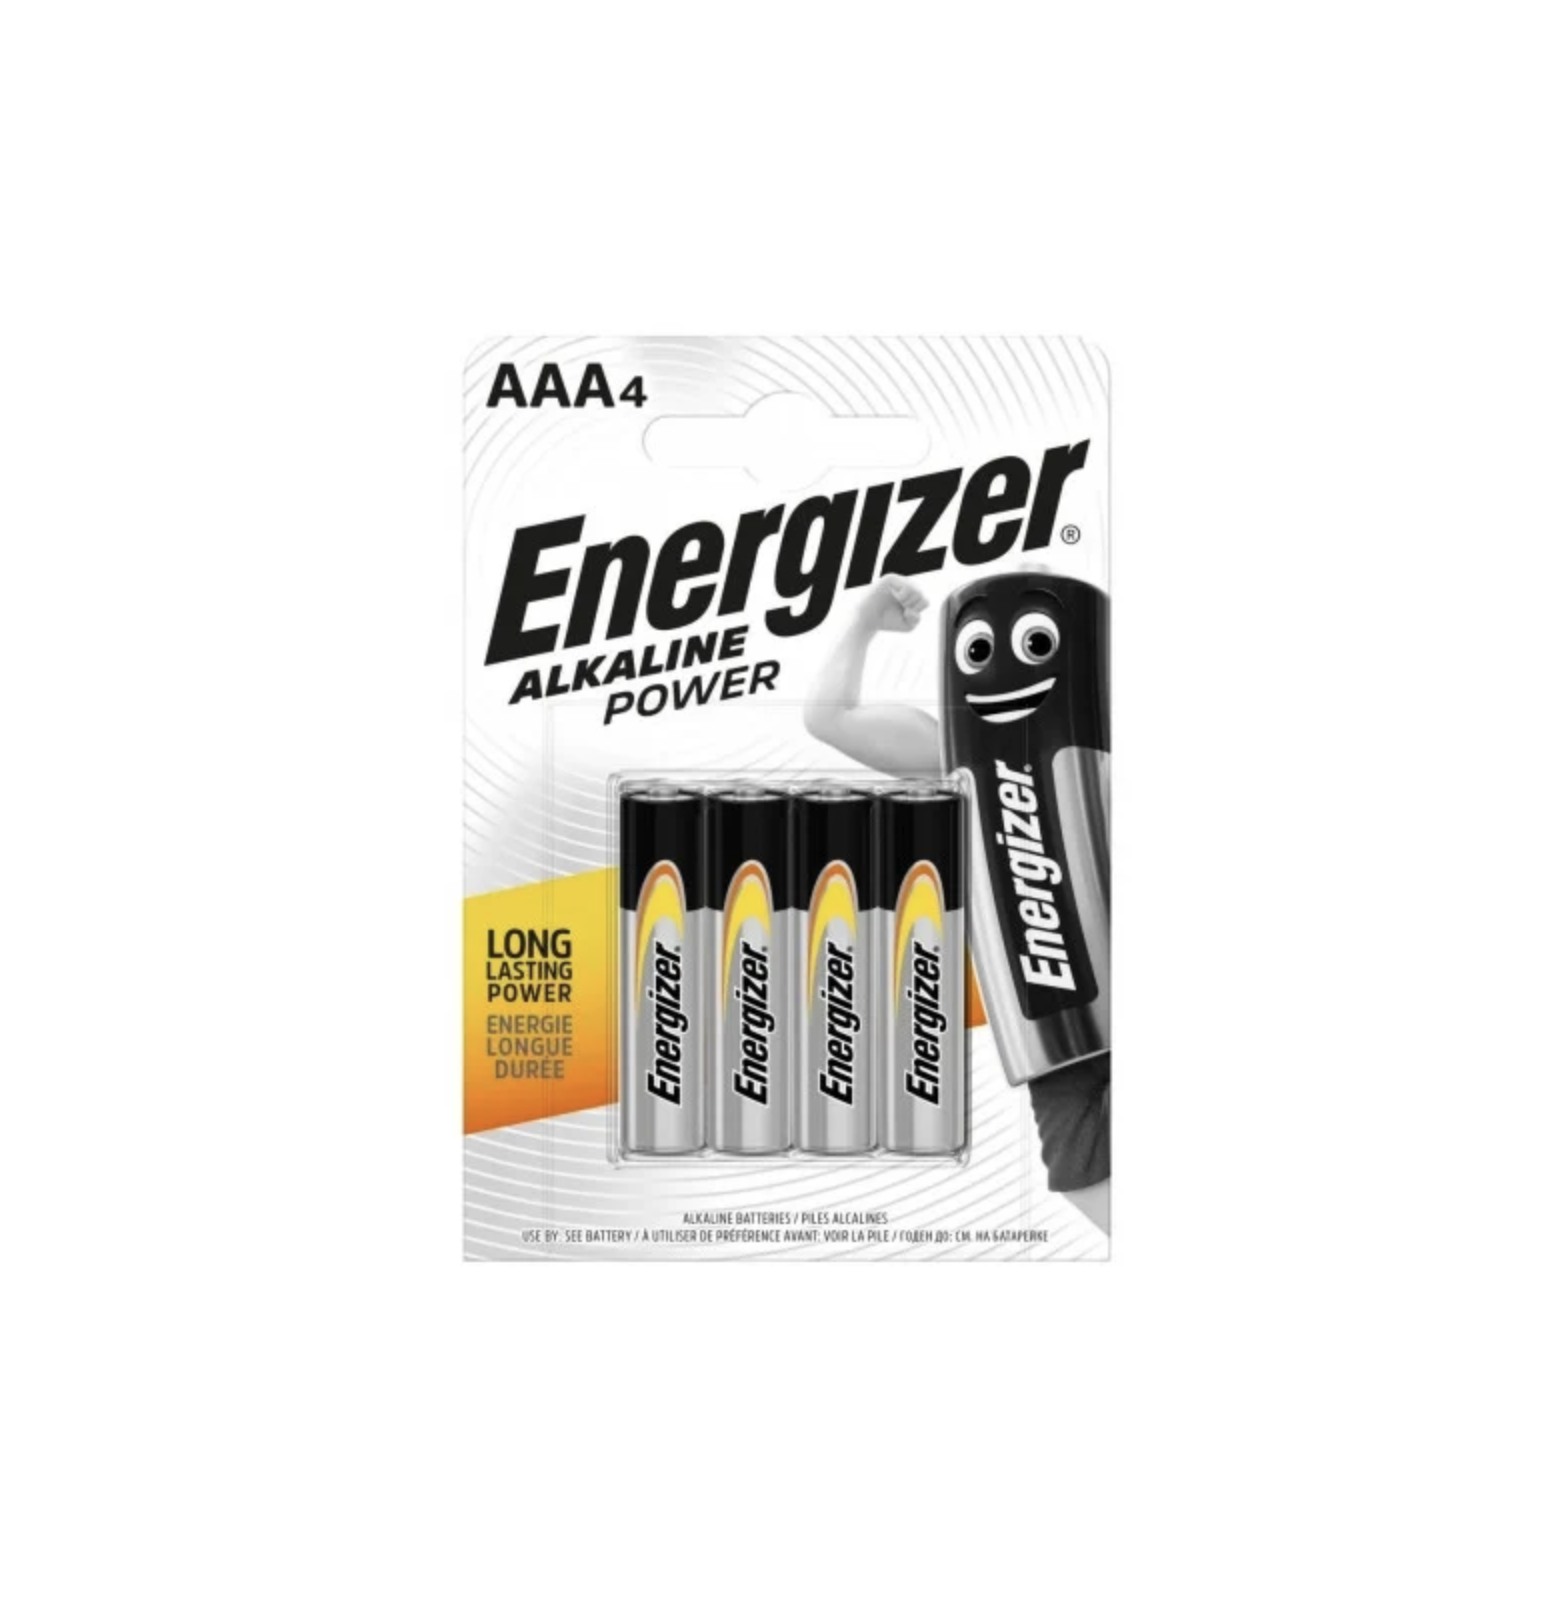   / Energizer -   Alkaline Power LR03 AAA 4 